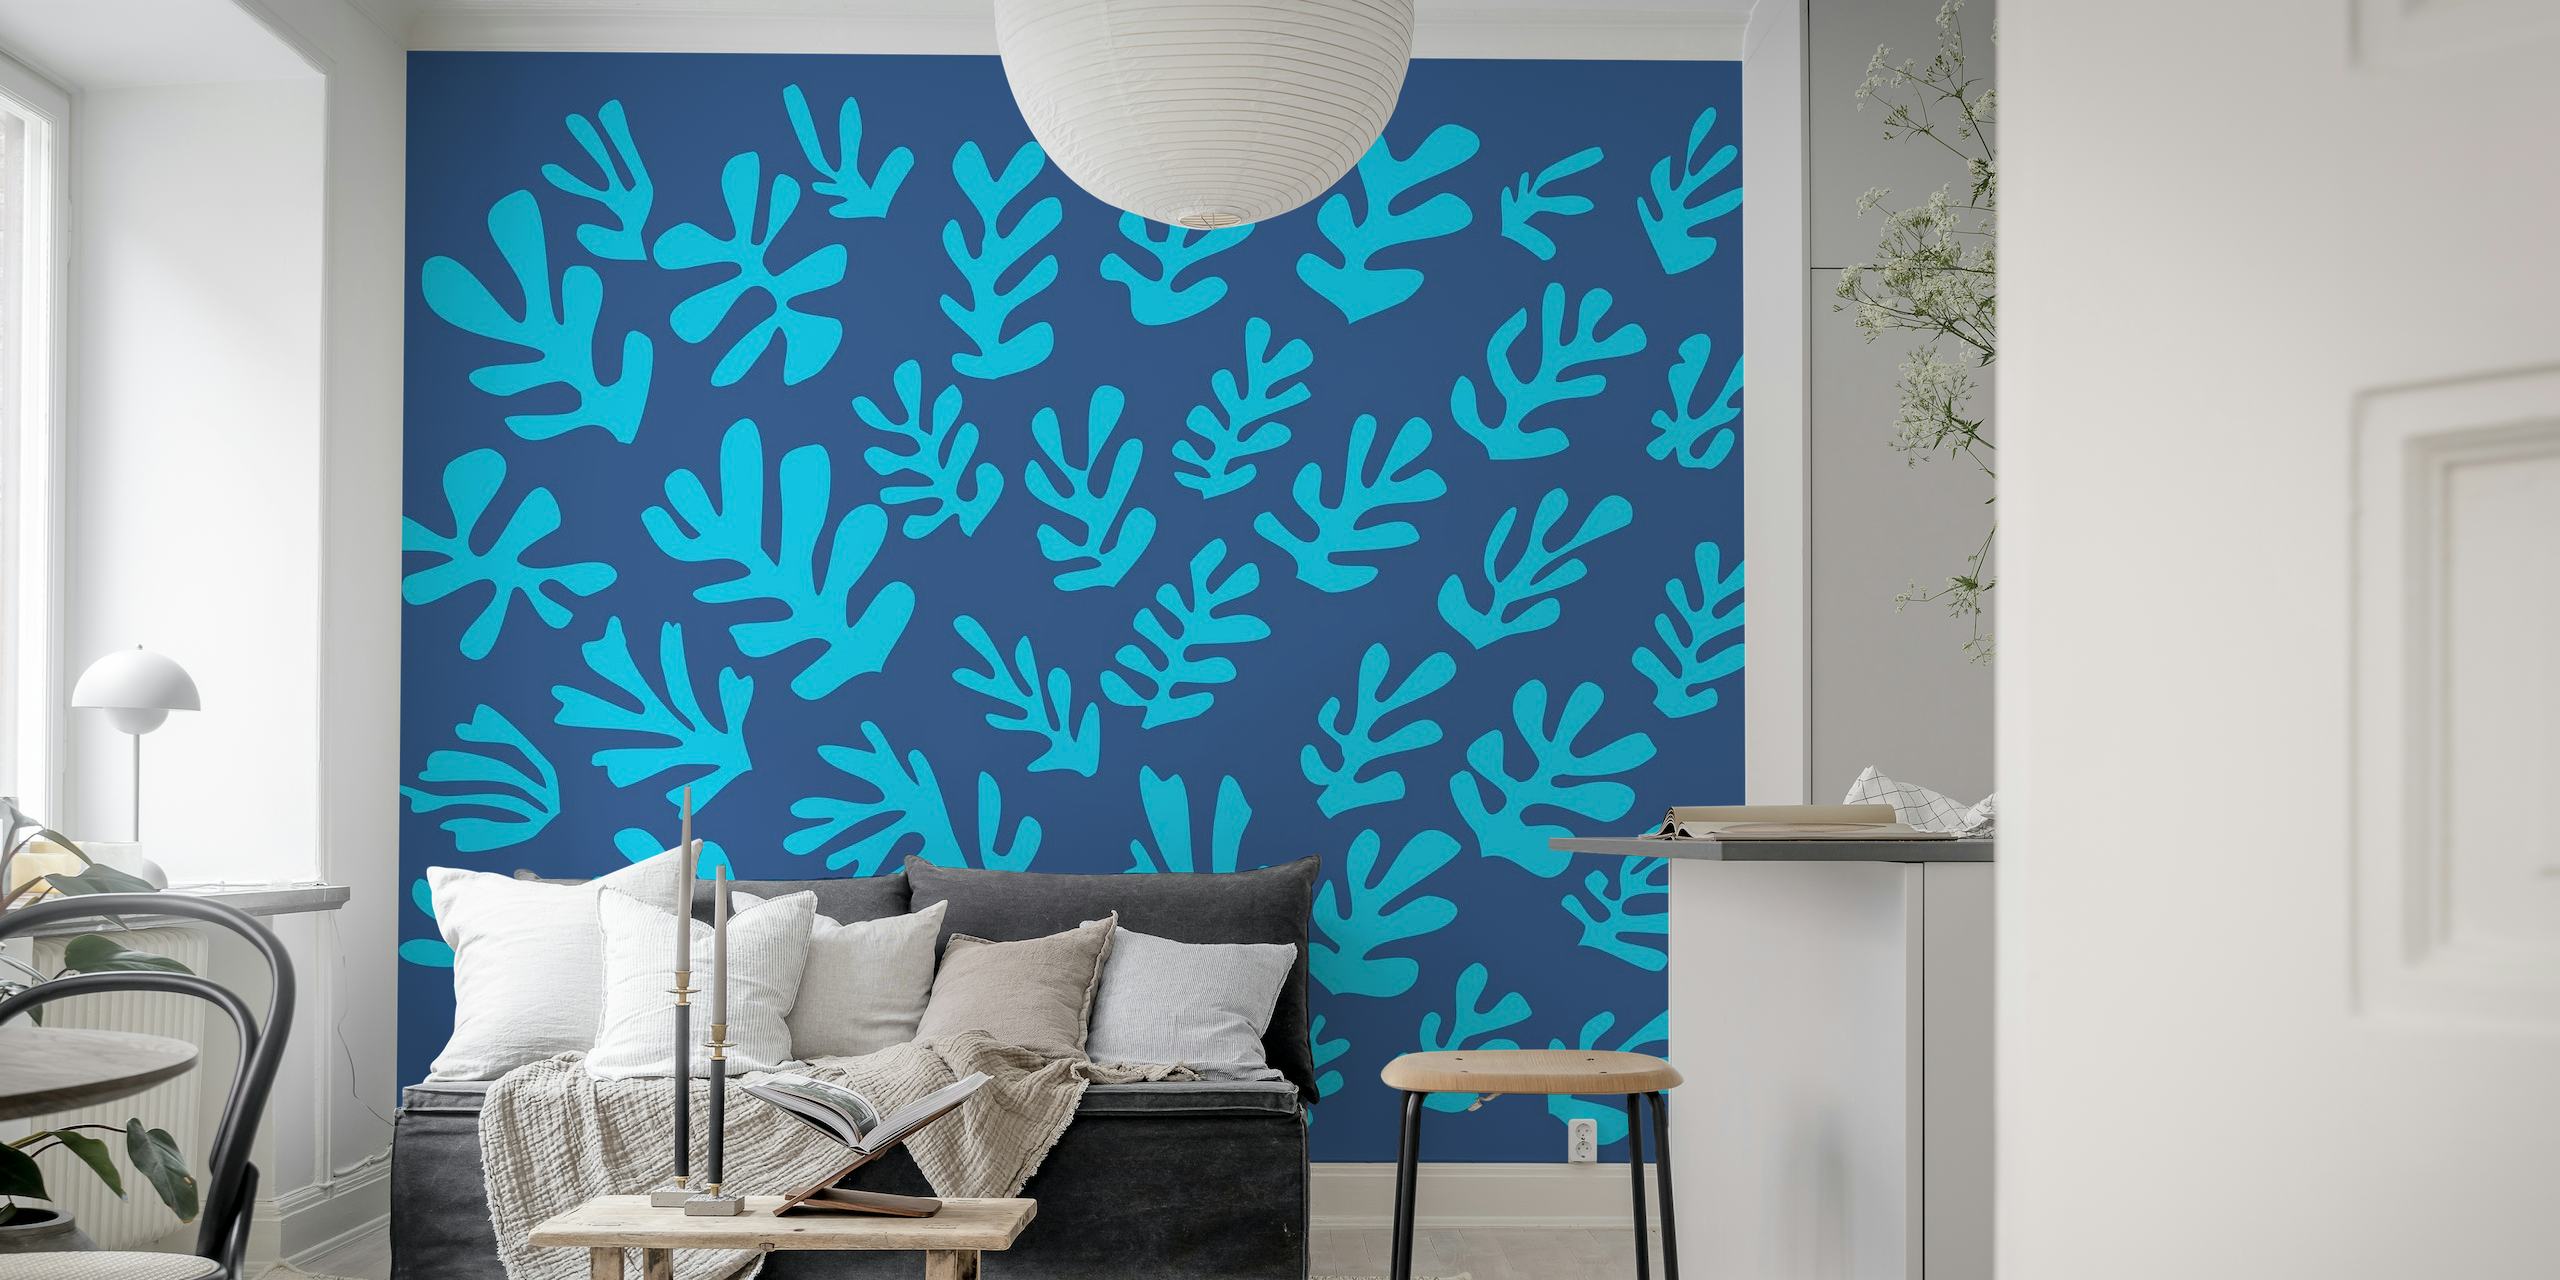 Minimalistisches Wandgemälde mit blauen Blättern im Matisse-Stil auf sattem Hintergrund.